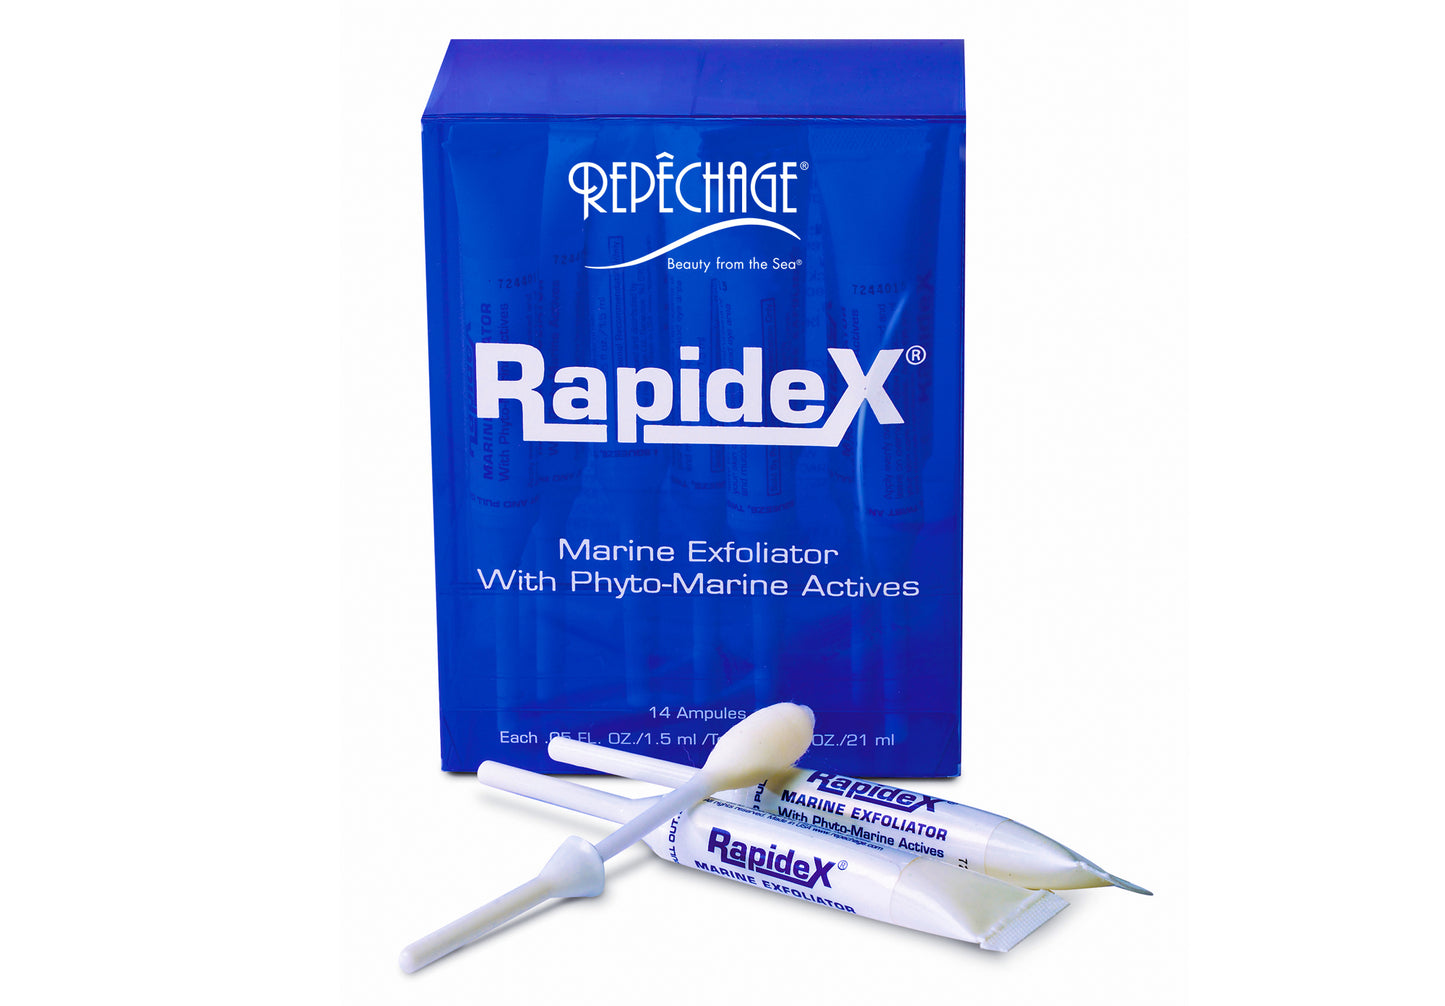 Repechage Rapidex AHA Exfoliator, 14 pc, 1.5ml